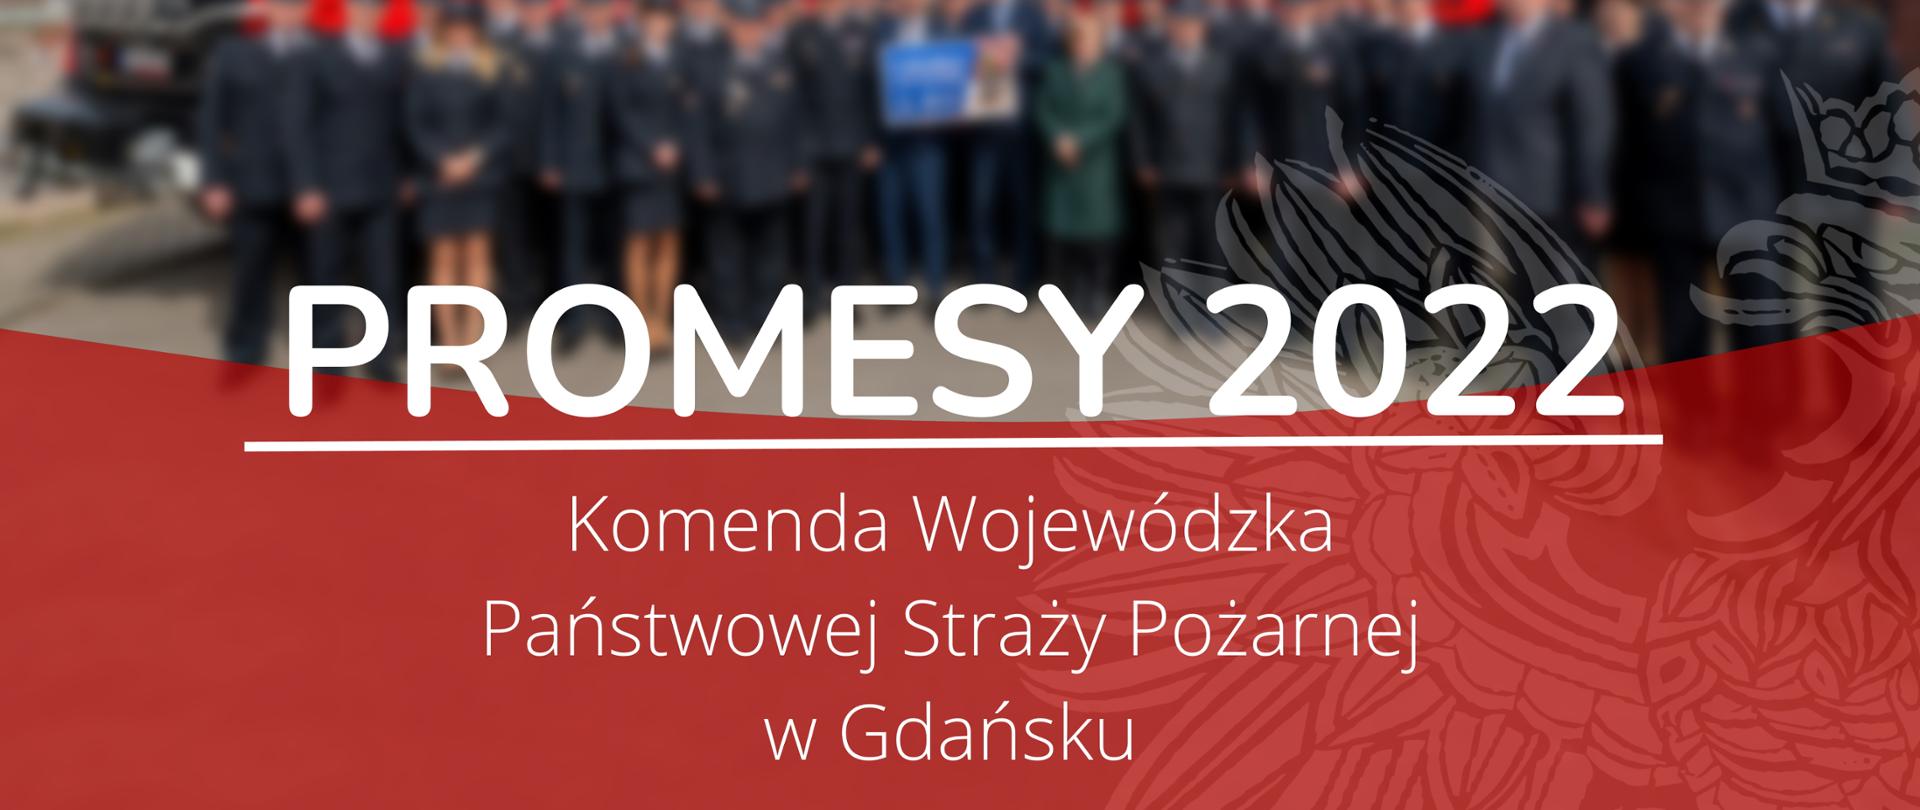 Promesy 2022 Komenda Wojewódzka Państwowej Straży Pożarnej w Gdańsku.